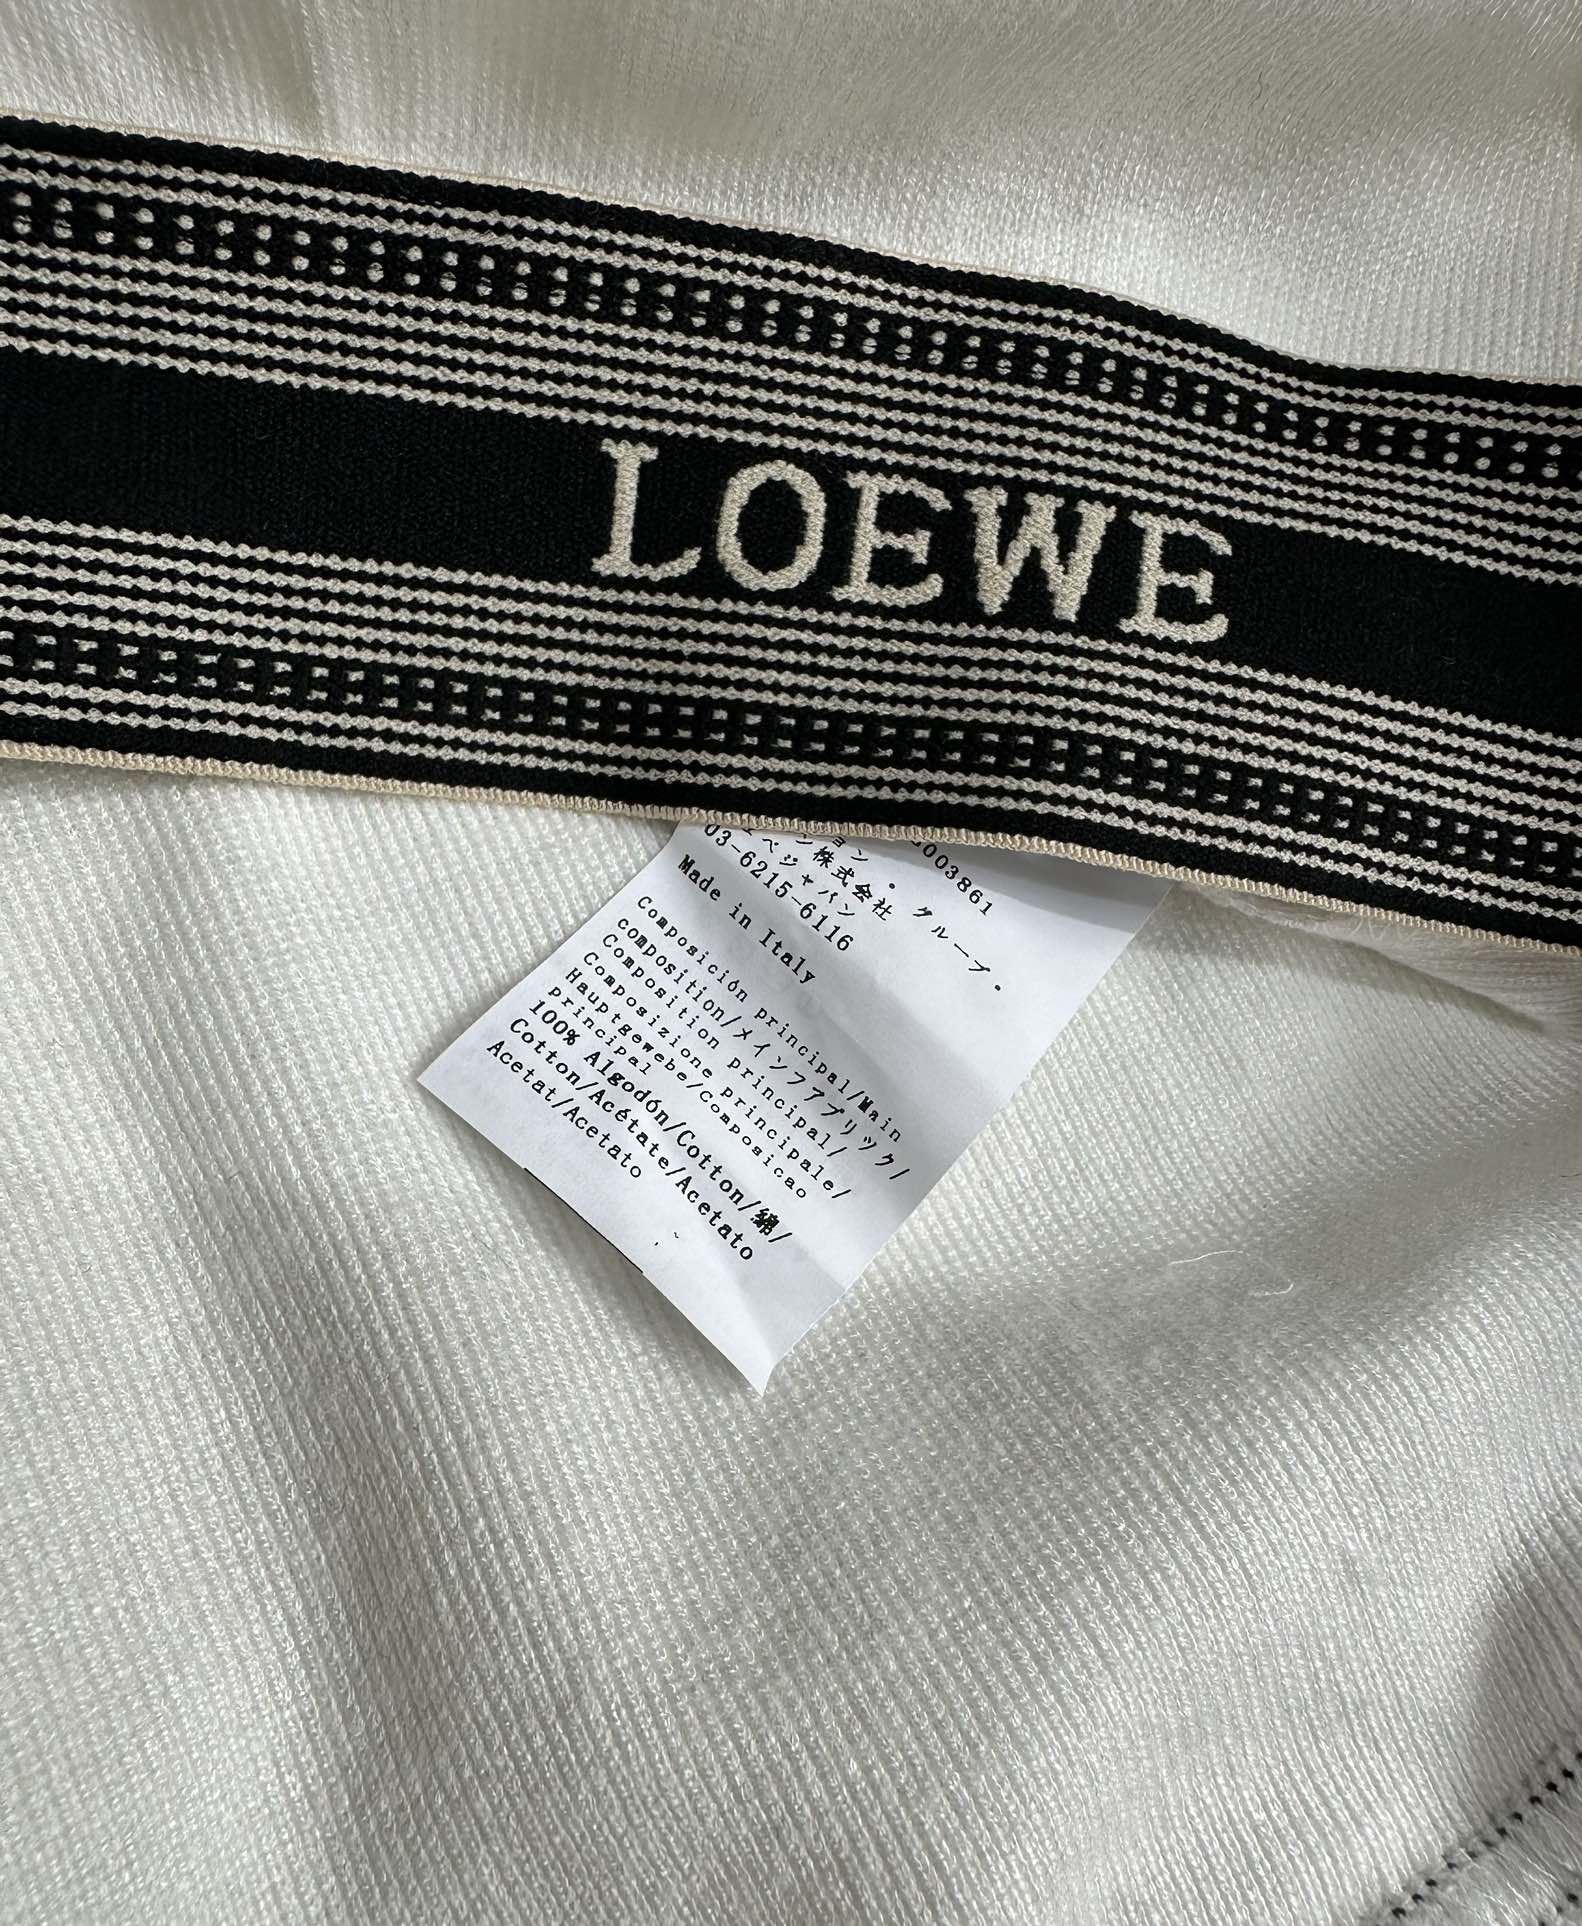 爆单推荐Loew*24早春新品时髦精必入超短款衬衫假两件套！内搭罗纹针织小背心一套上身时髦帅气！露肩设计